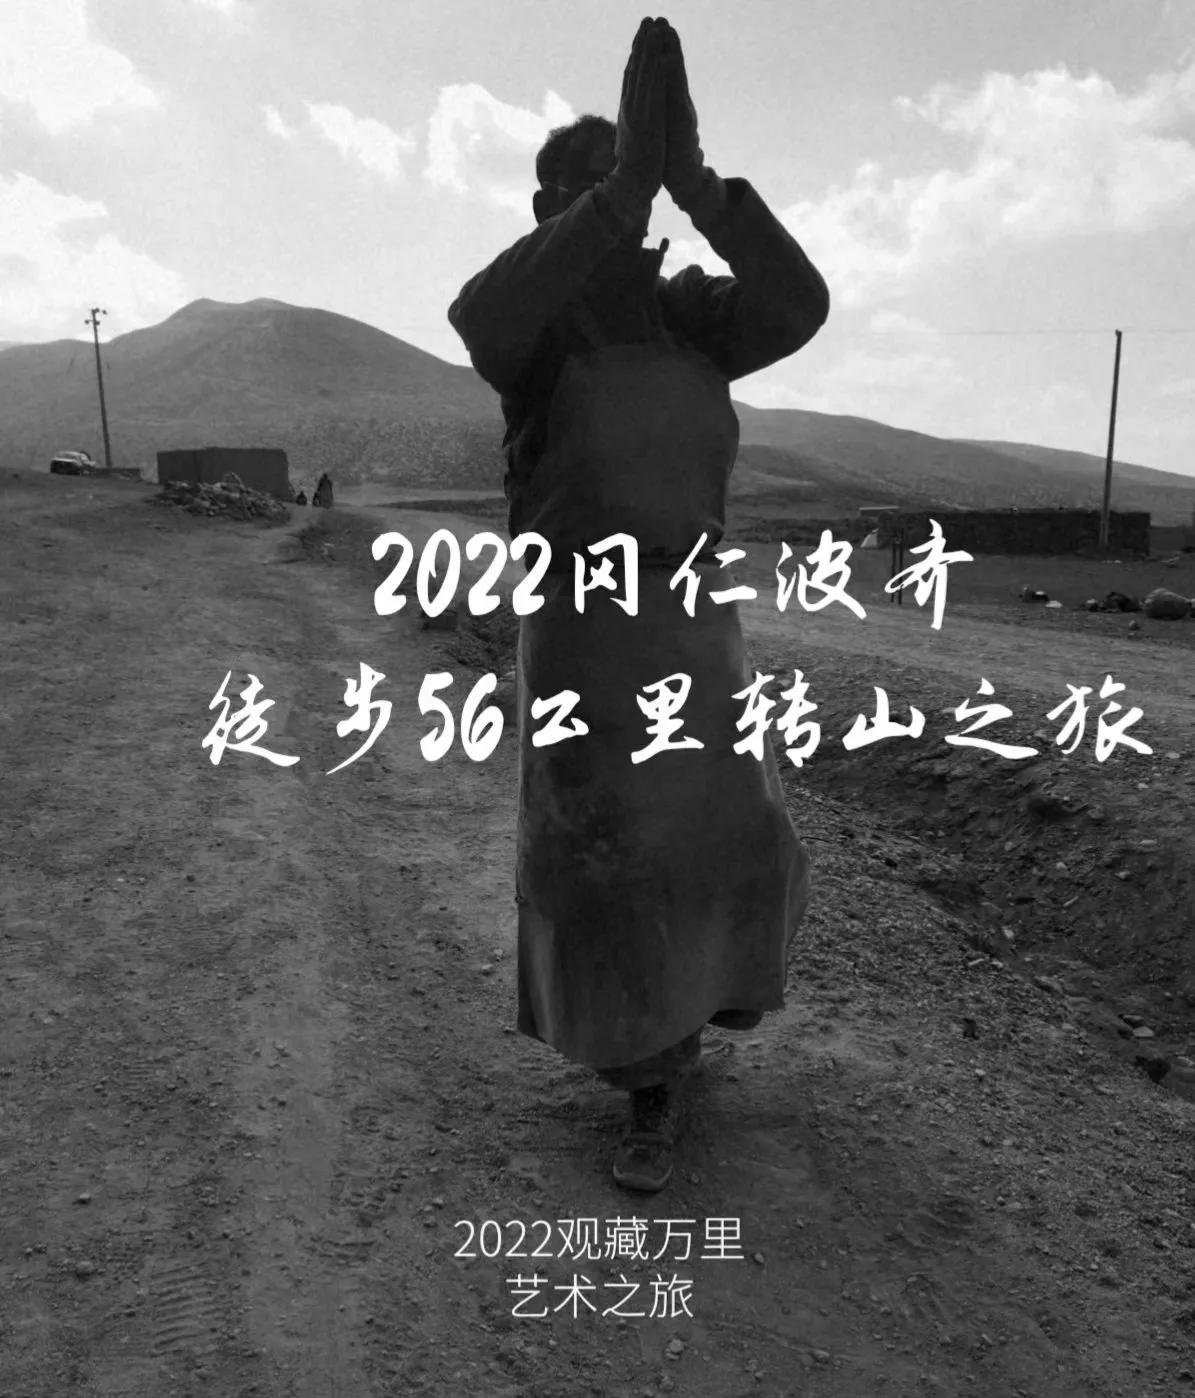 2022观藏万里艺术之旅暨王麒诚滇藏线新藏线心光大展圆满成功